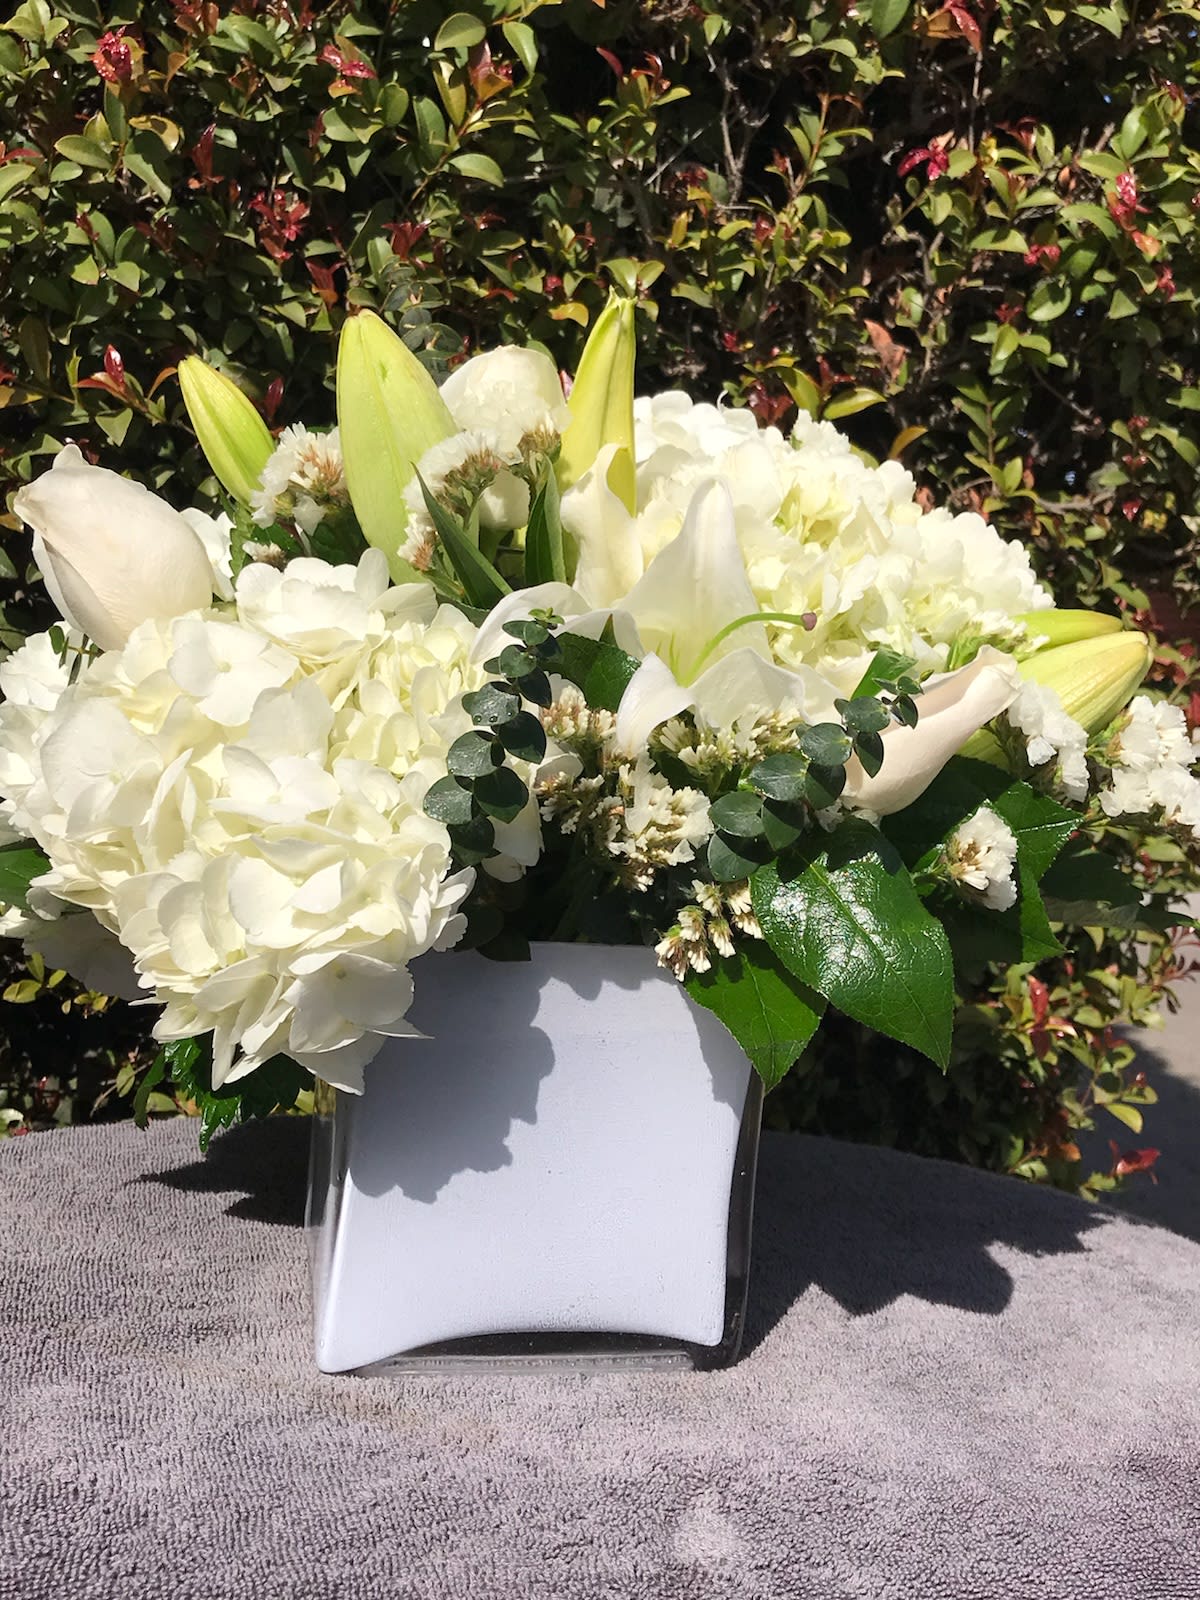 flower arrangements for sale